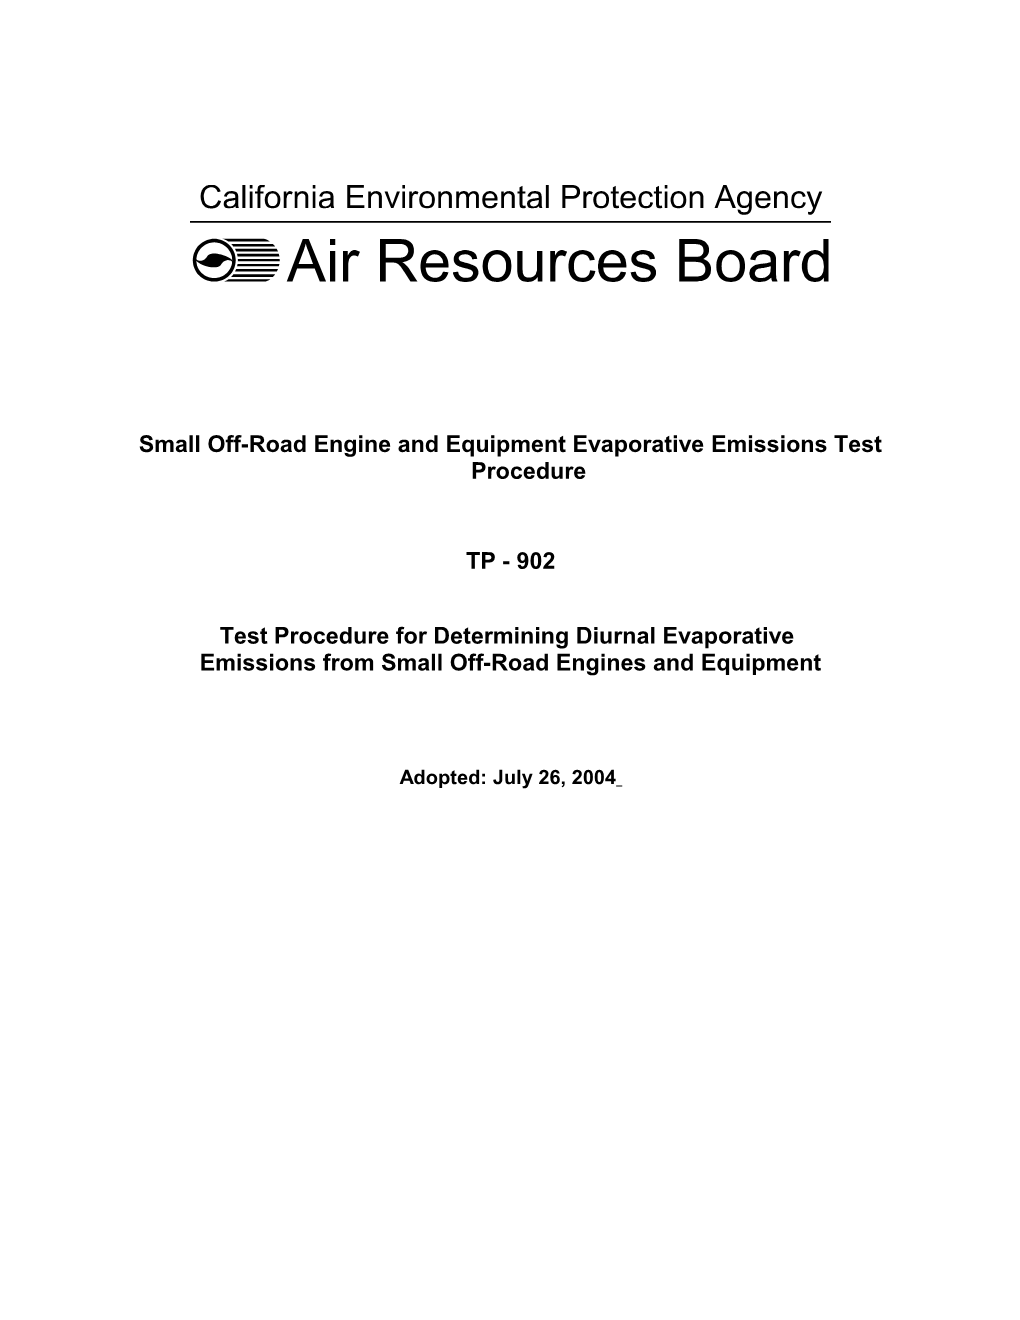 Rulemaking Informal: 2003-05-08 Draft Evaporative Emission Test Procedure TP-902